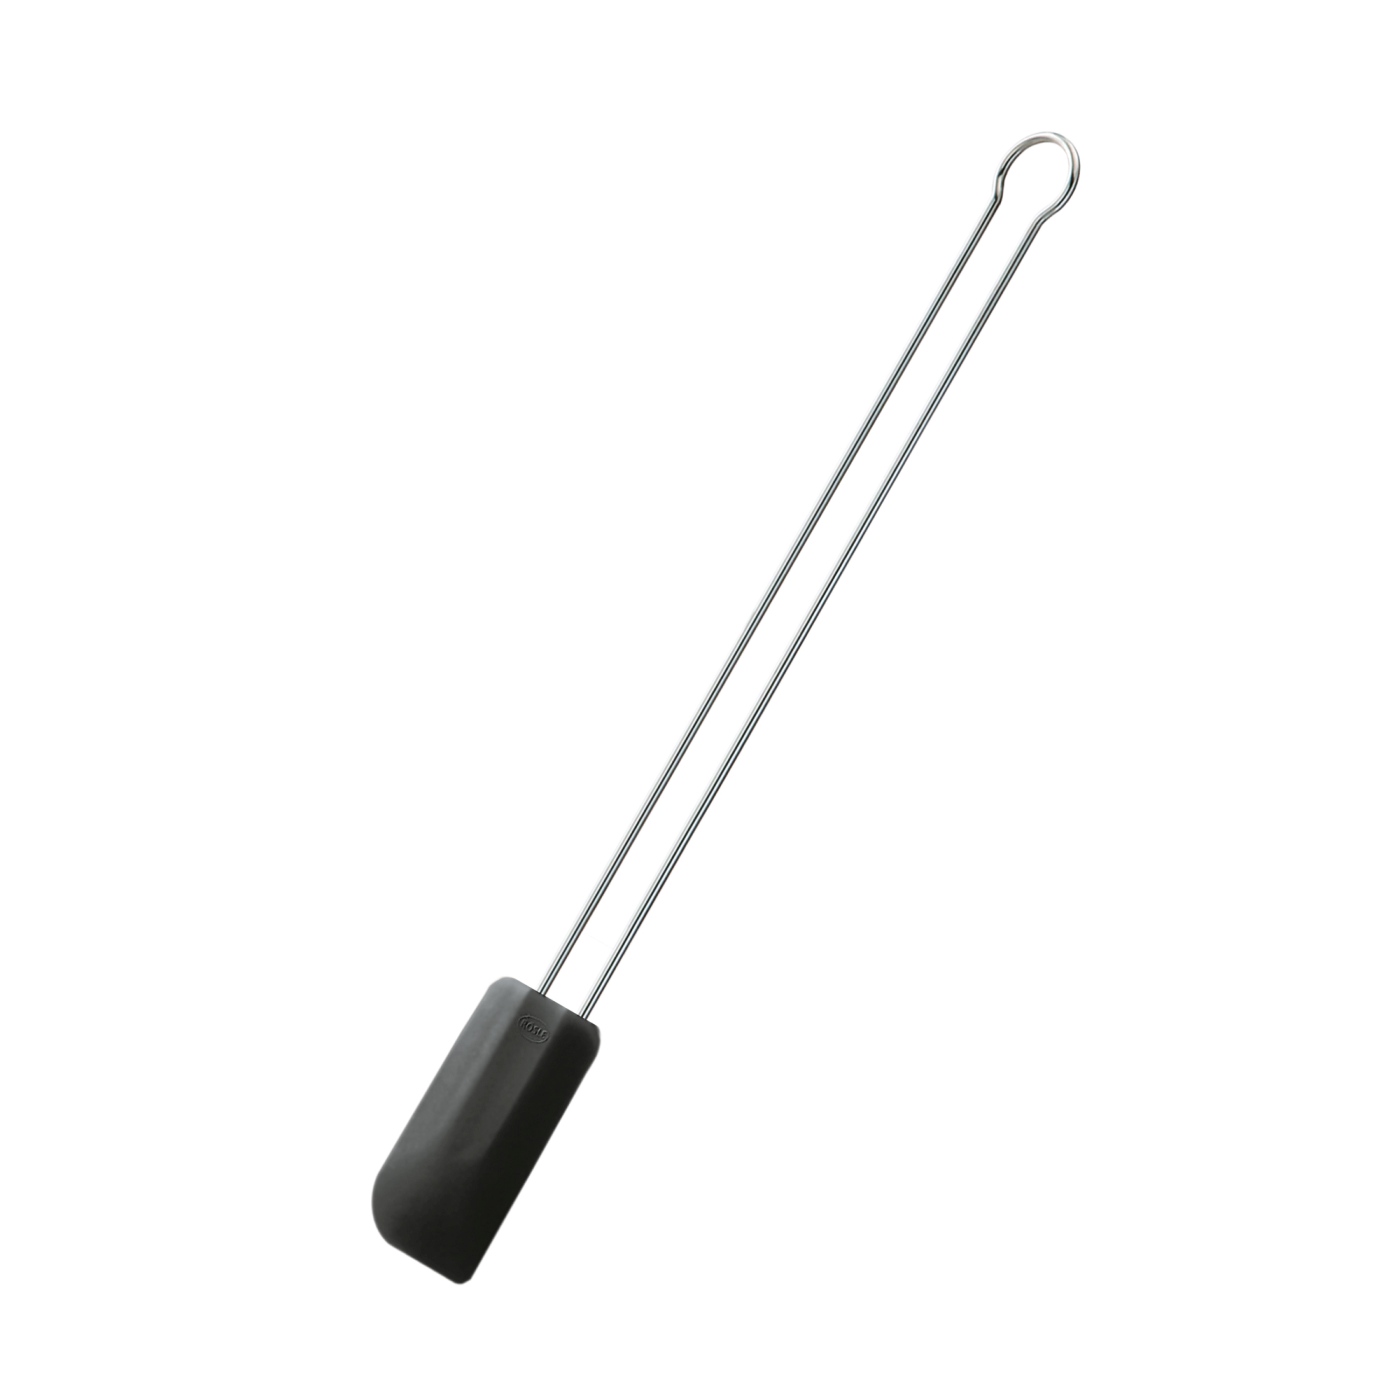 Silikonová stěrka dlouhá černá 26 cm - RÖSLE